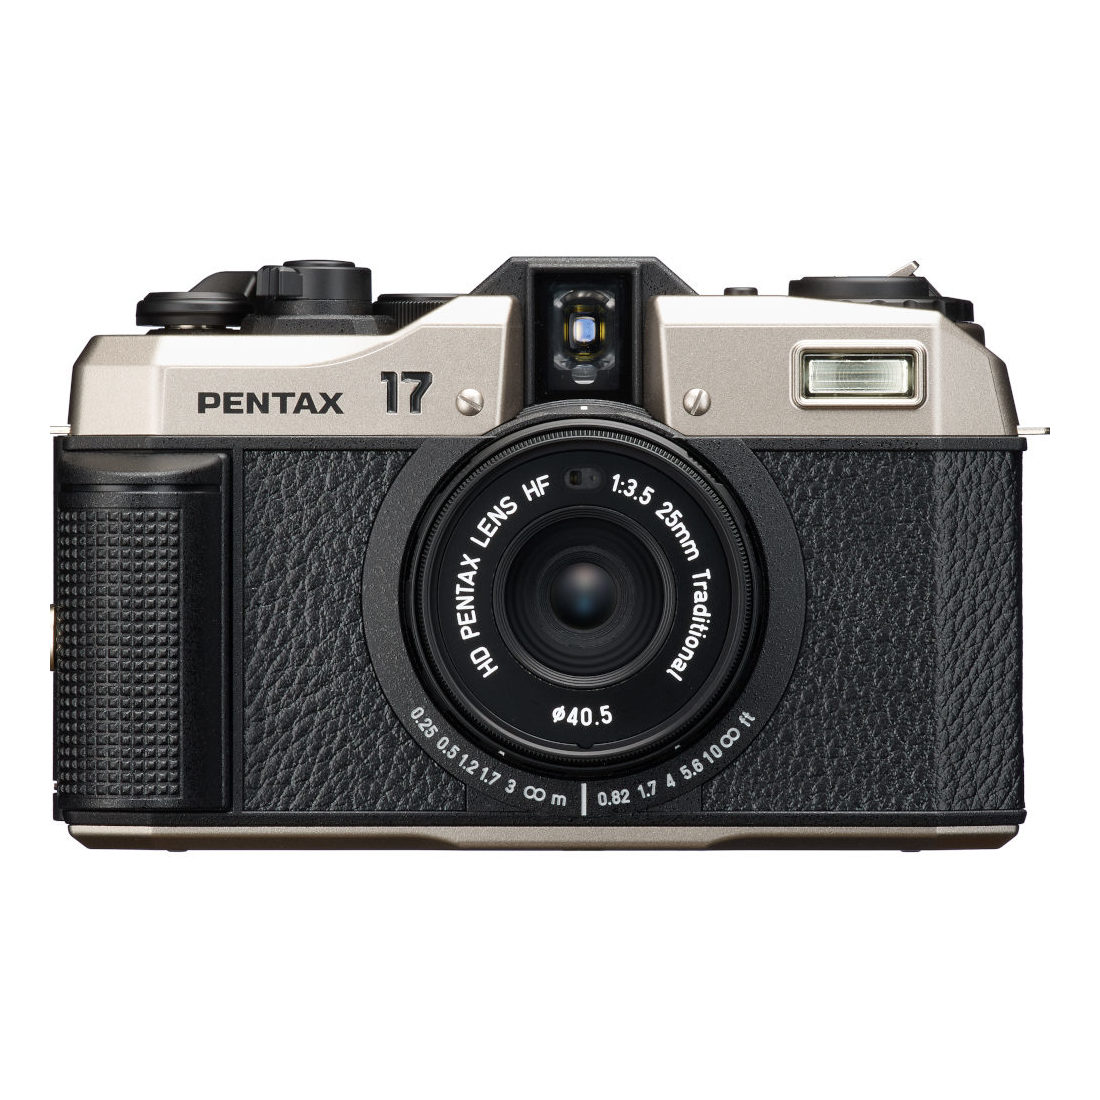 PENTAX 17 analoge camera